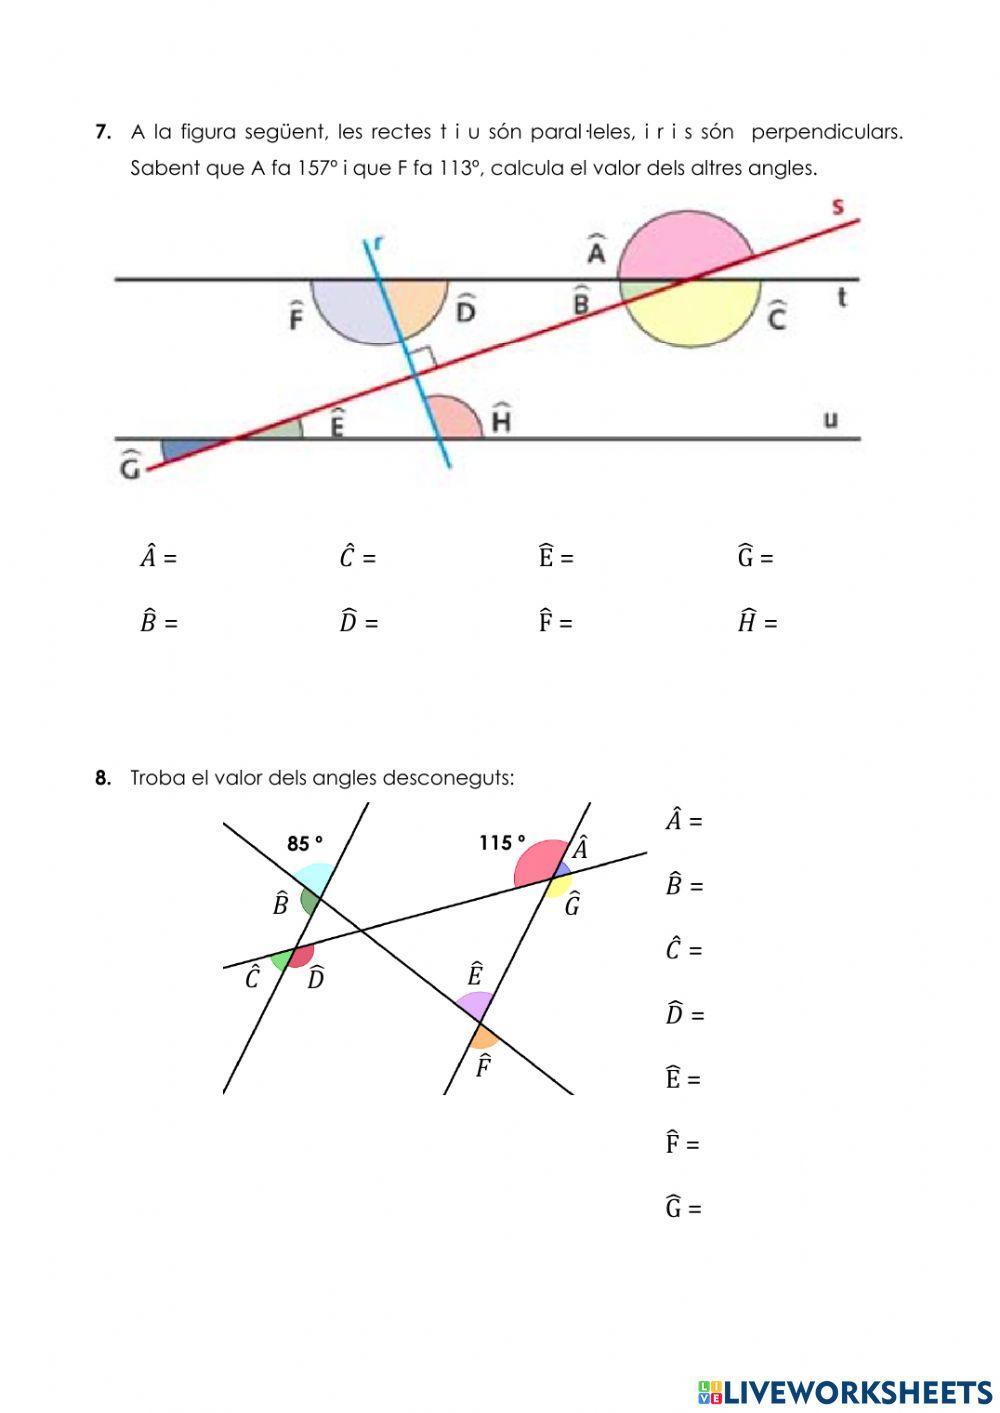 Angles complementaris i suplementaris II